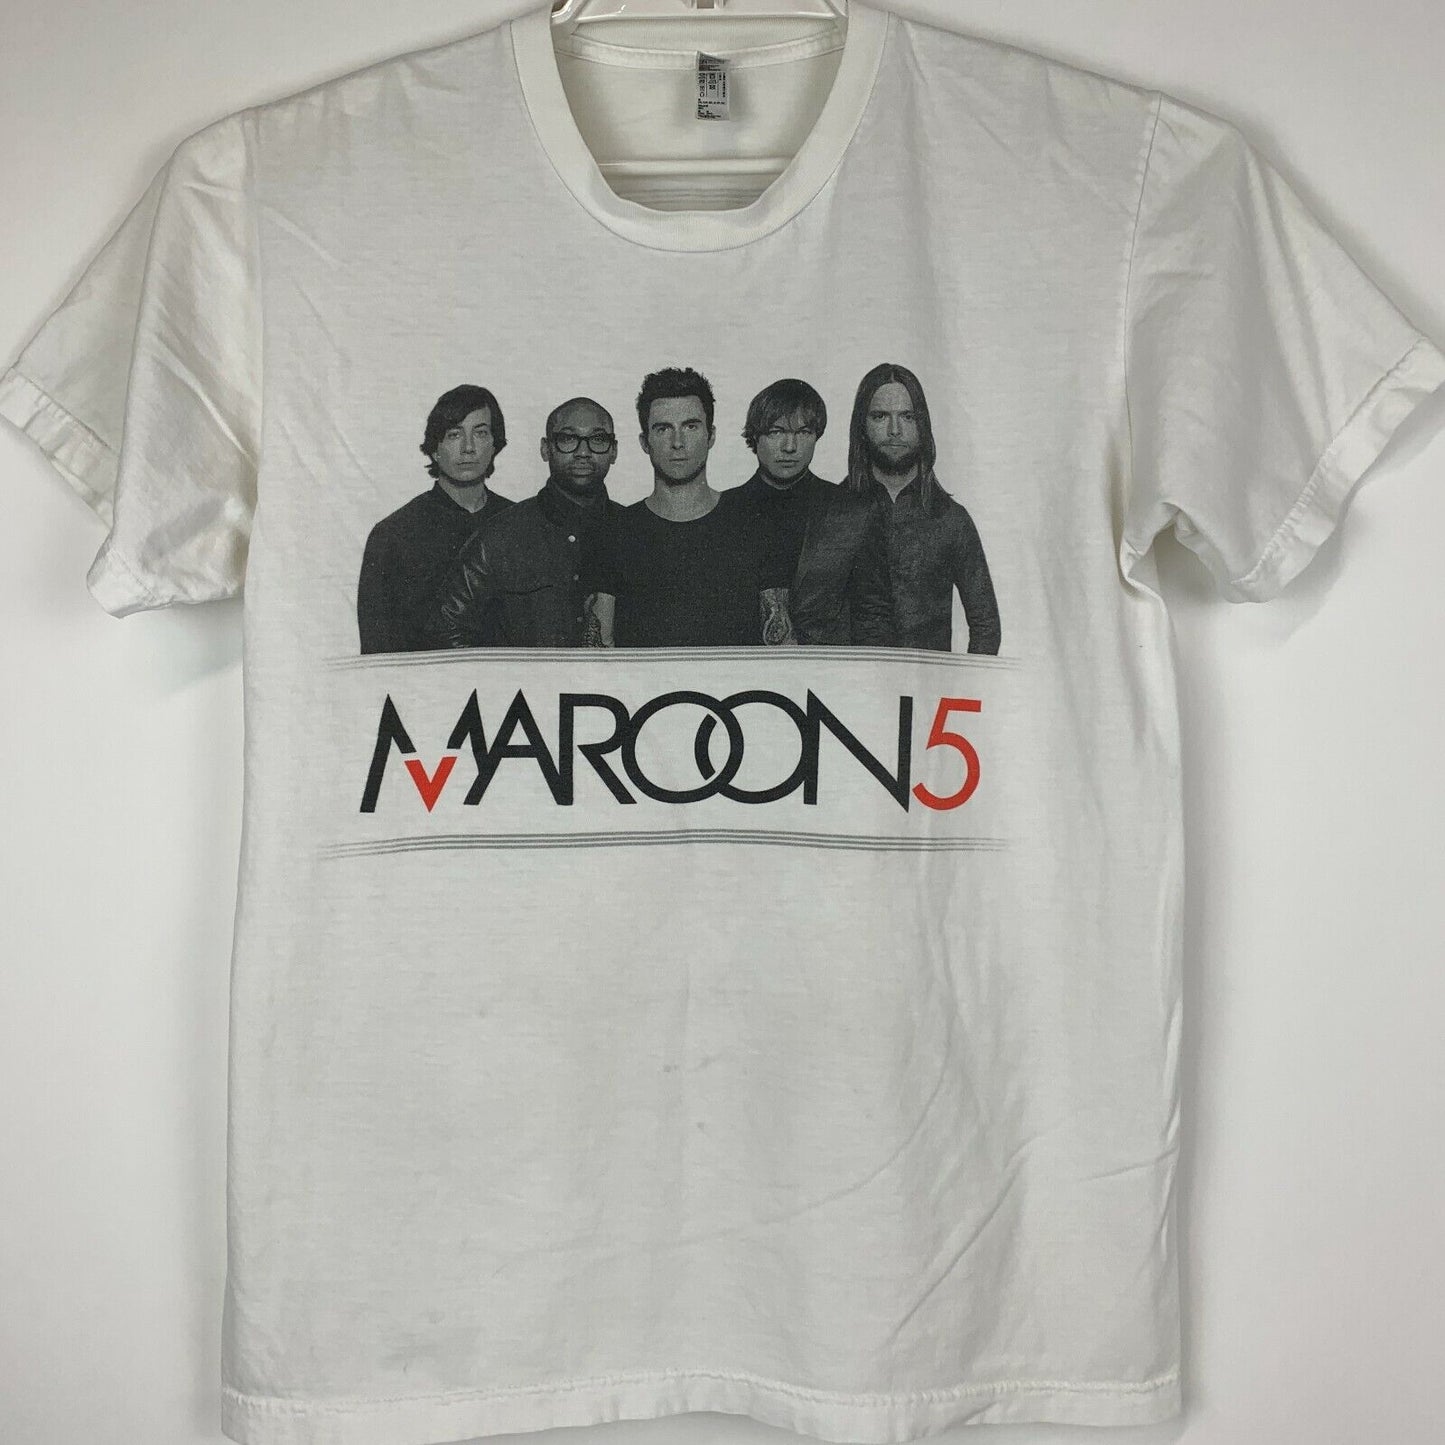 Maroon 5 Las Vegas 2013 Tour Camiseta Pop Rock Band Concierto Hecho en EE.UU. Medio